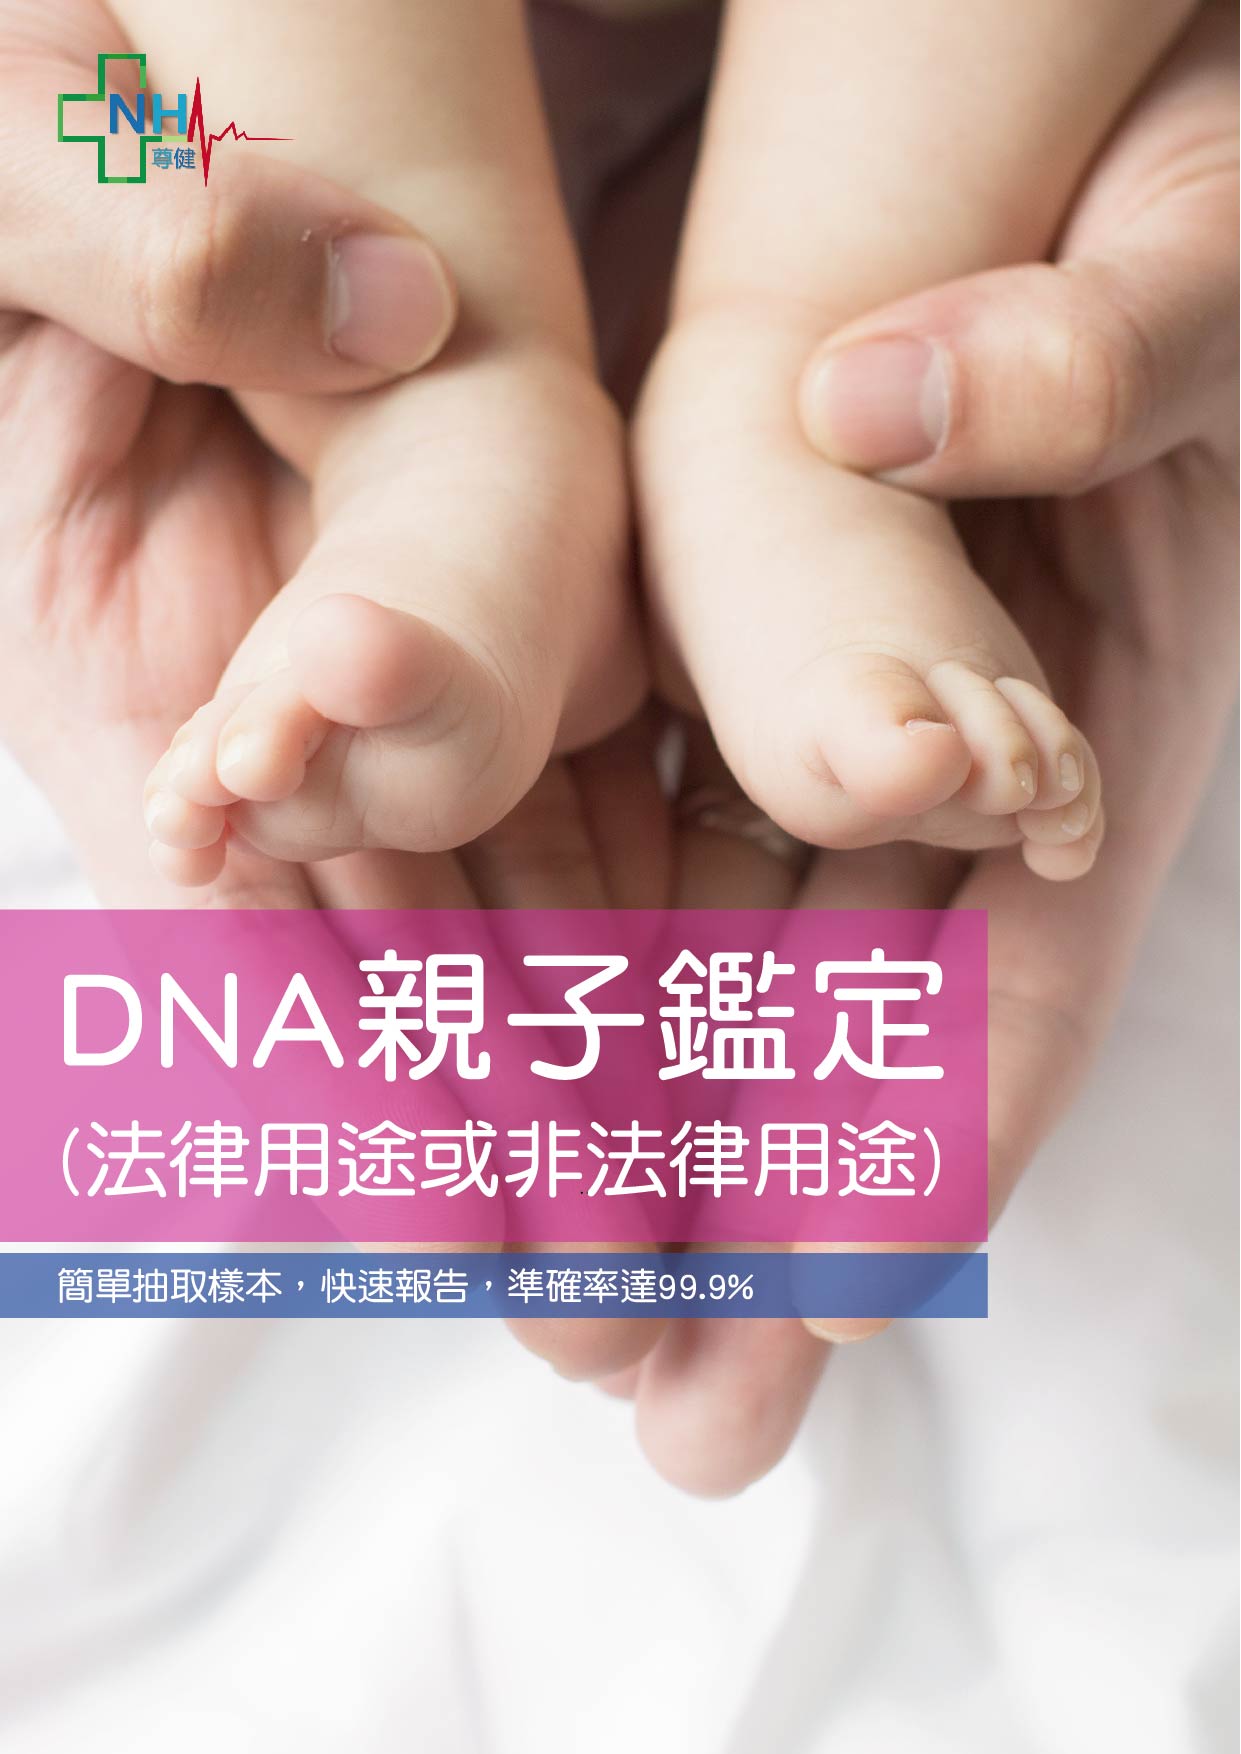 dna-dna-paternity-testing-1.jpg